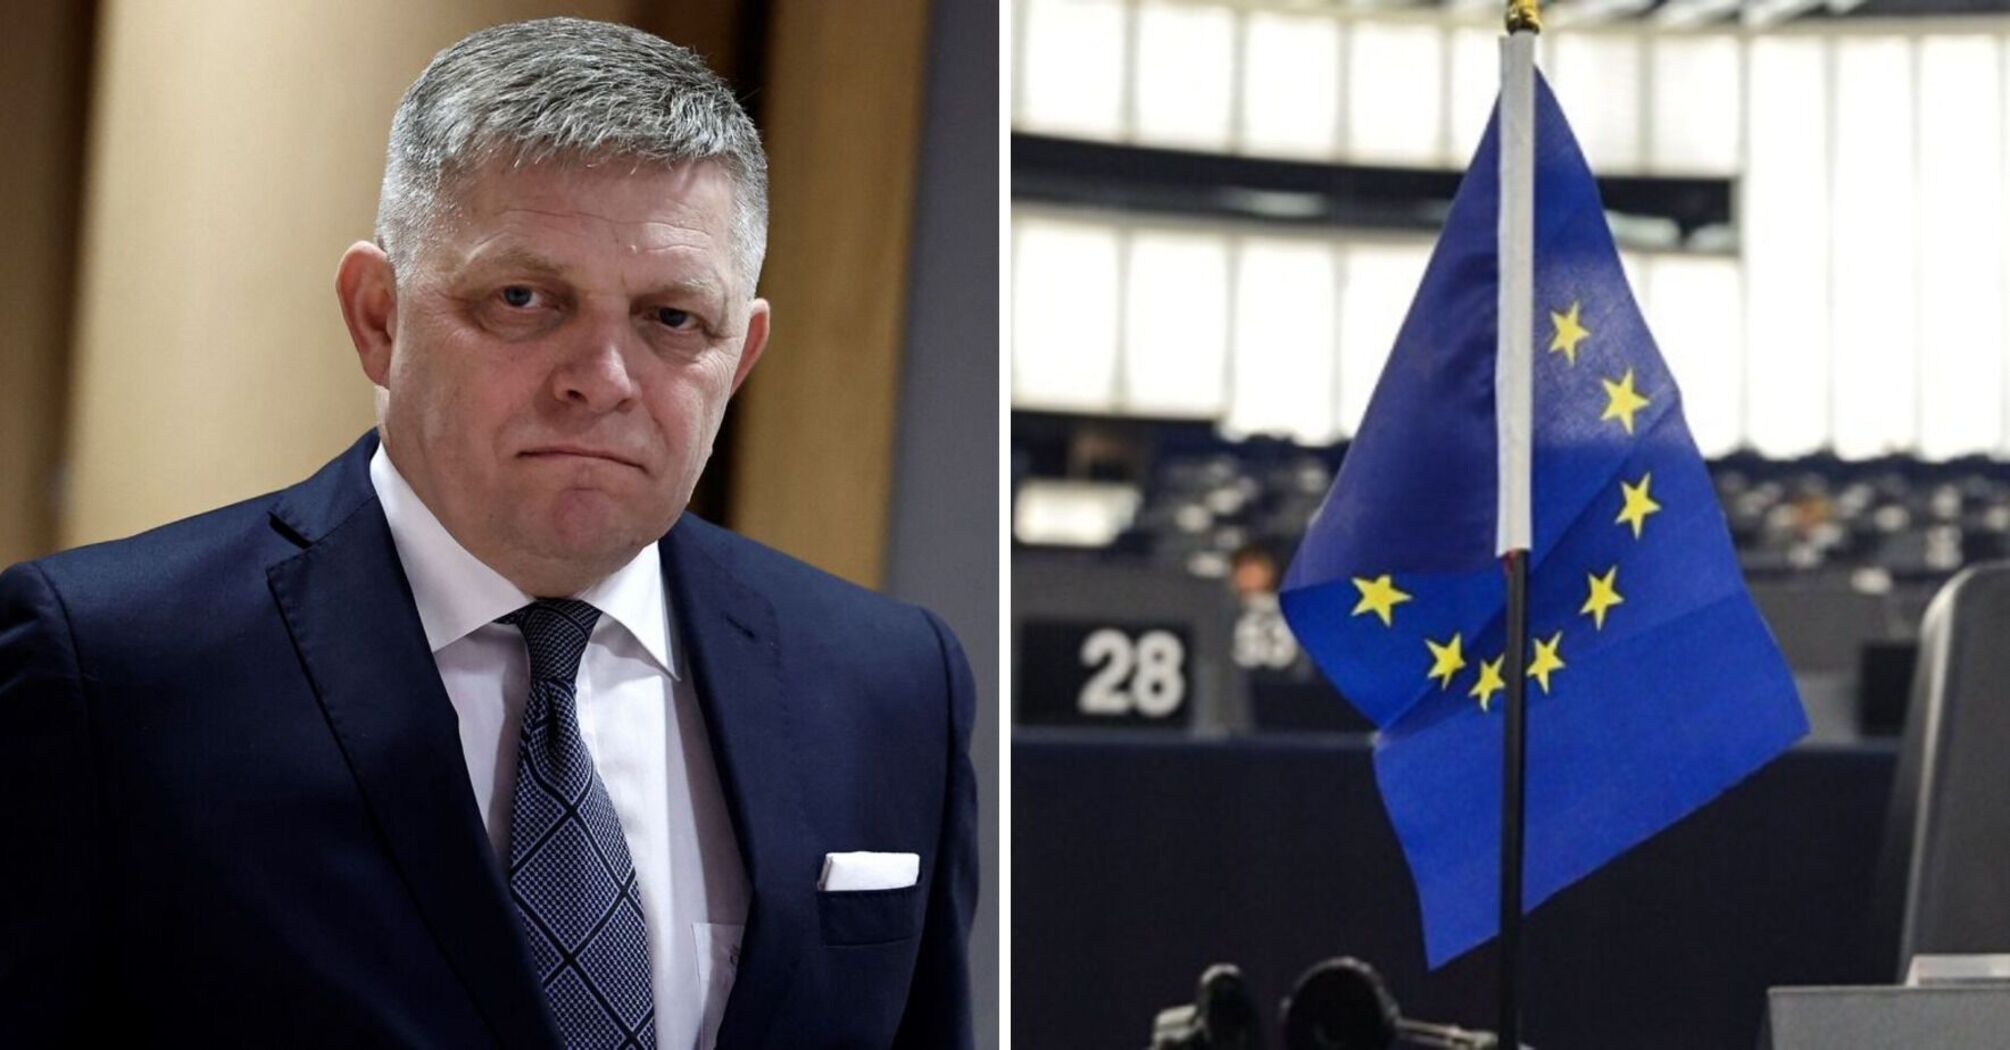 Partia Fico, która krytykowała pomoc dla Ukrainy, przegrała wybory do Parlamentu Europejskiego: szczegóły